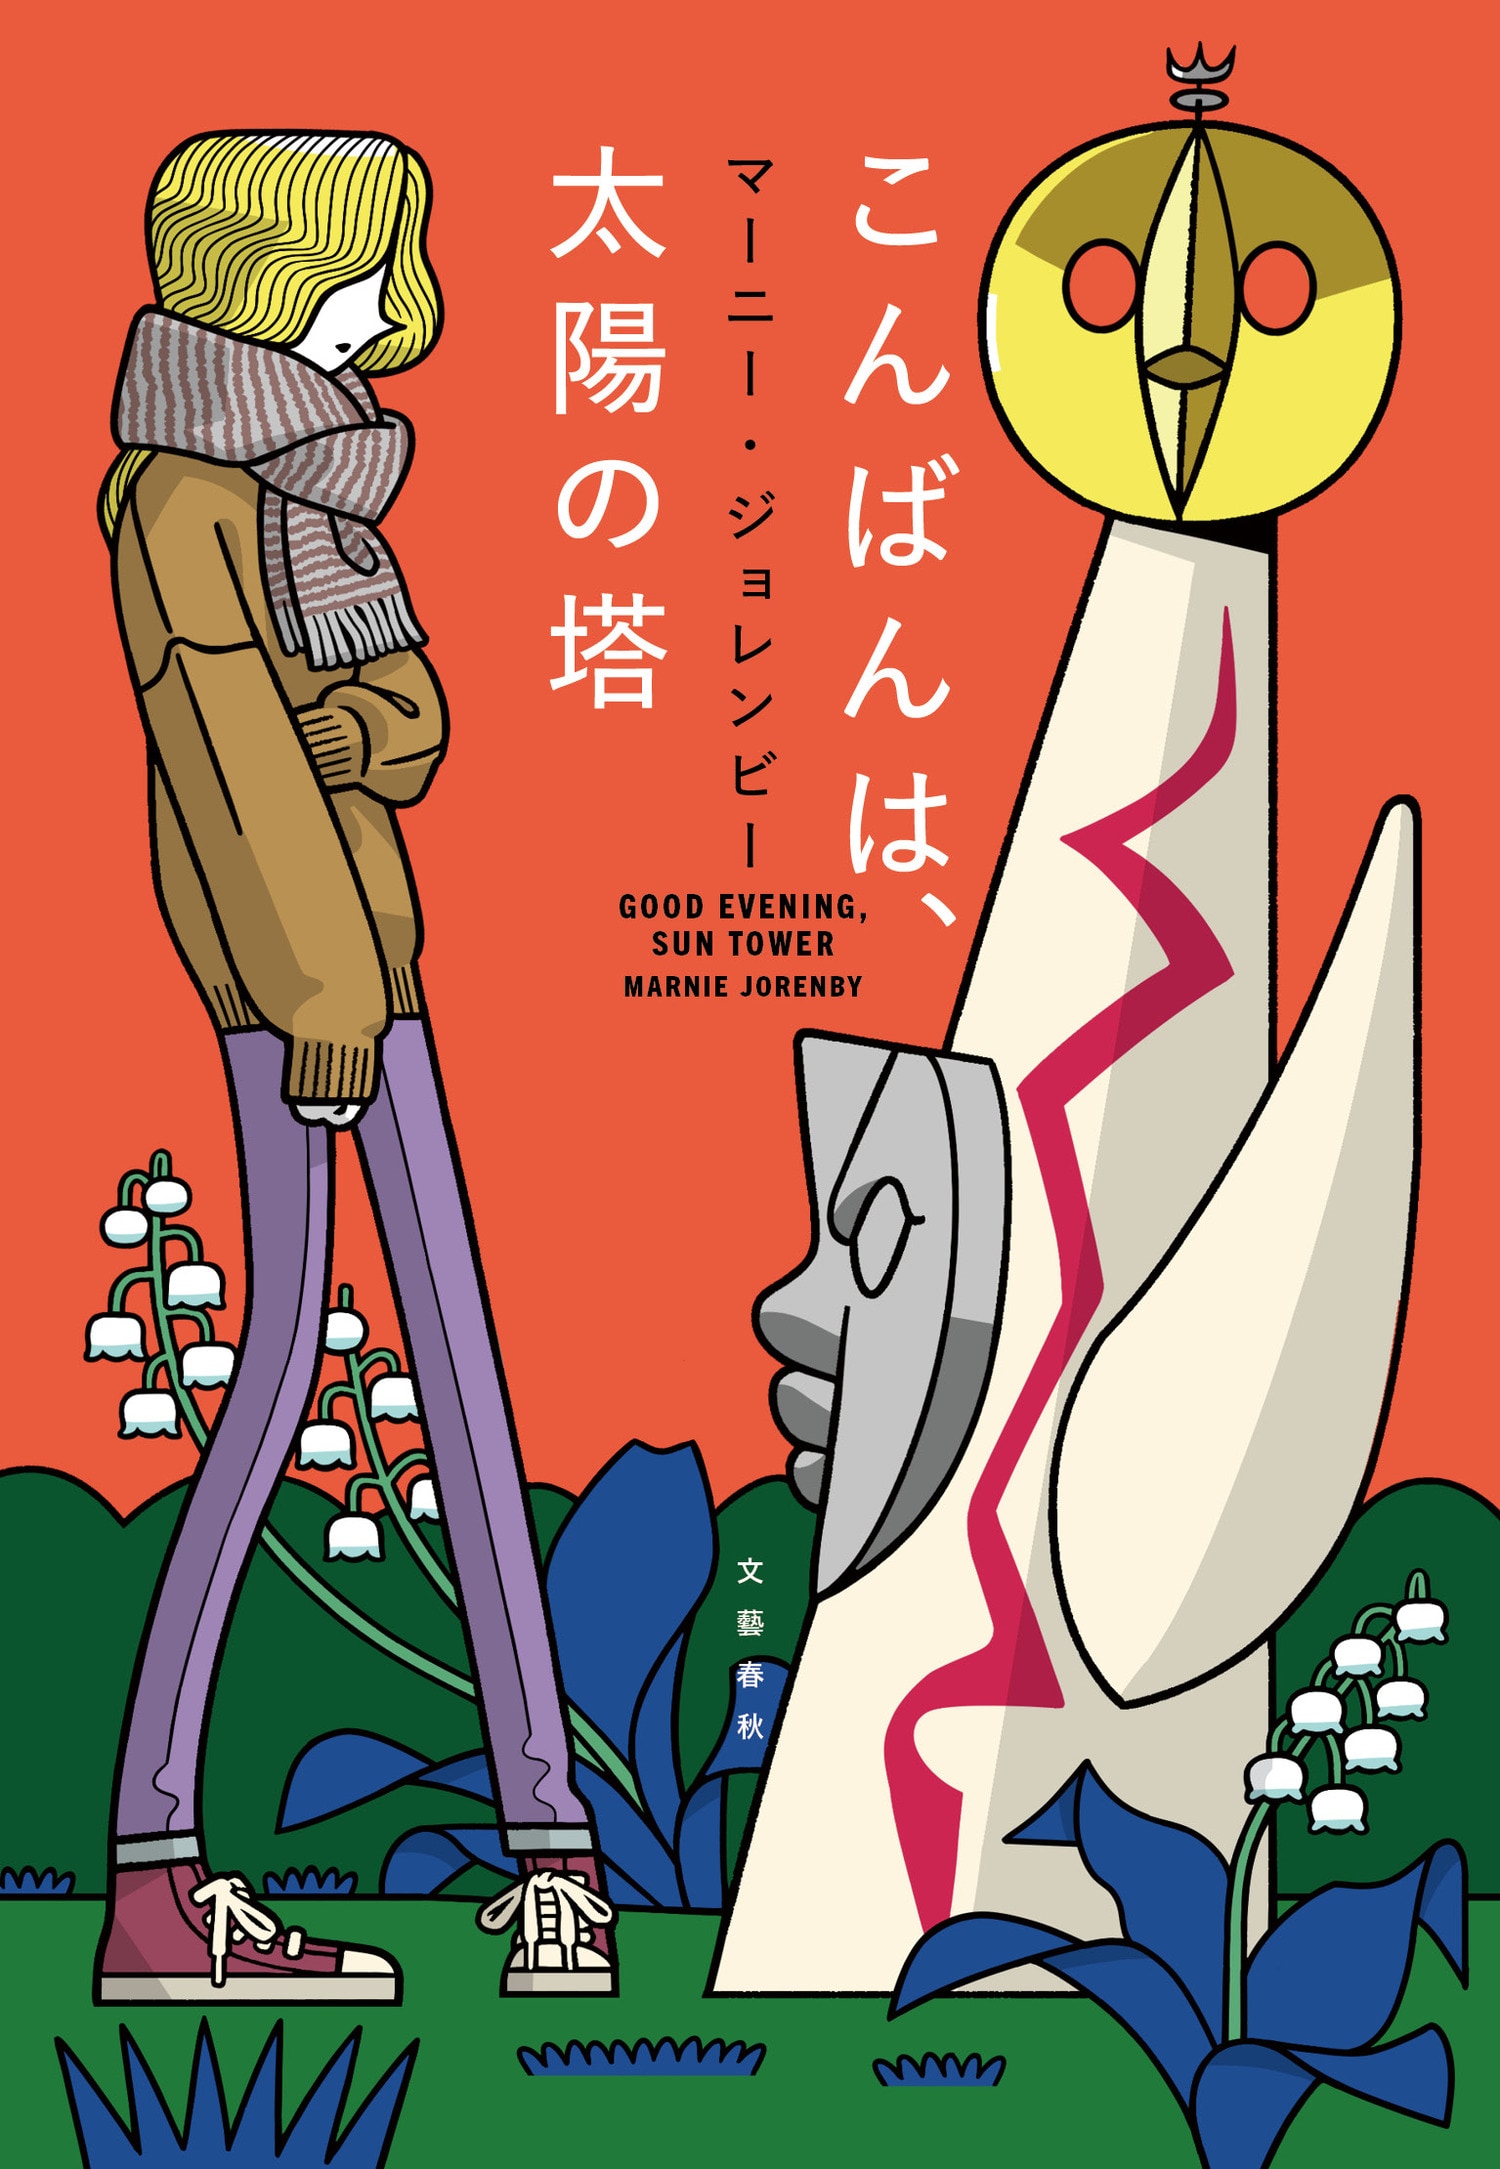 アメリカ人の著者が全篇日本語で書いた、ユニークな青春小説『こんばんは、太陽の塔』